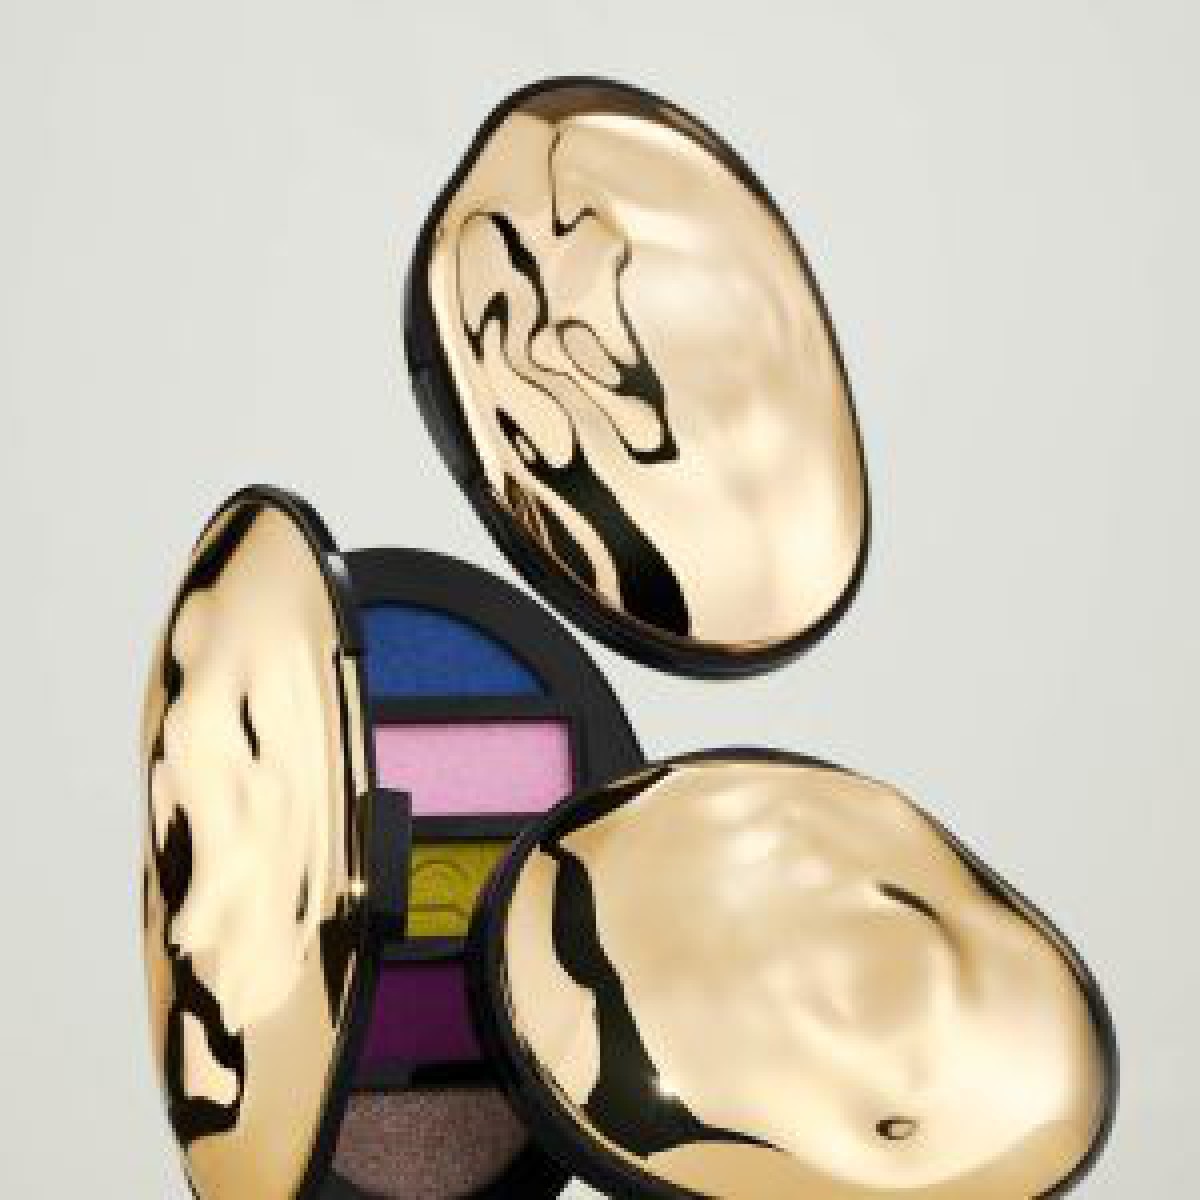 「バイレード」のメーキャップコレクションにアイシャドウパレットが登場、高発色なパウダー5色をセットに